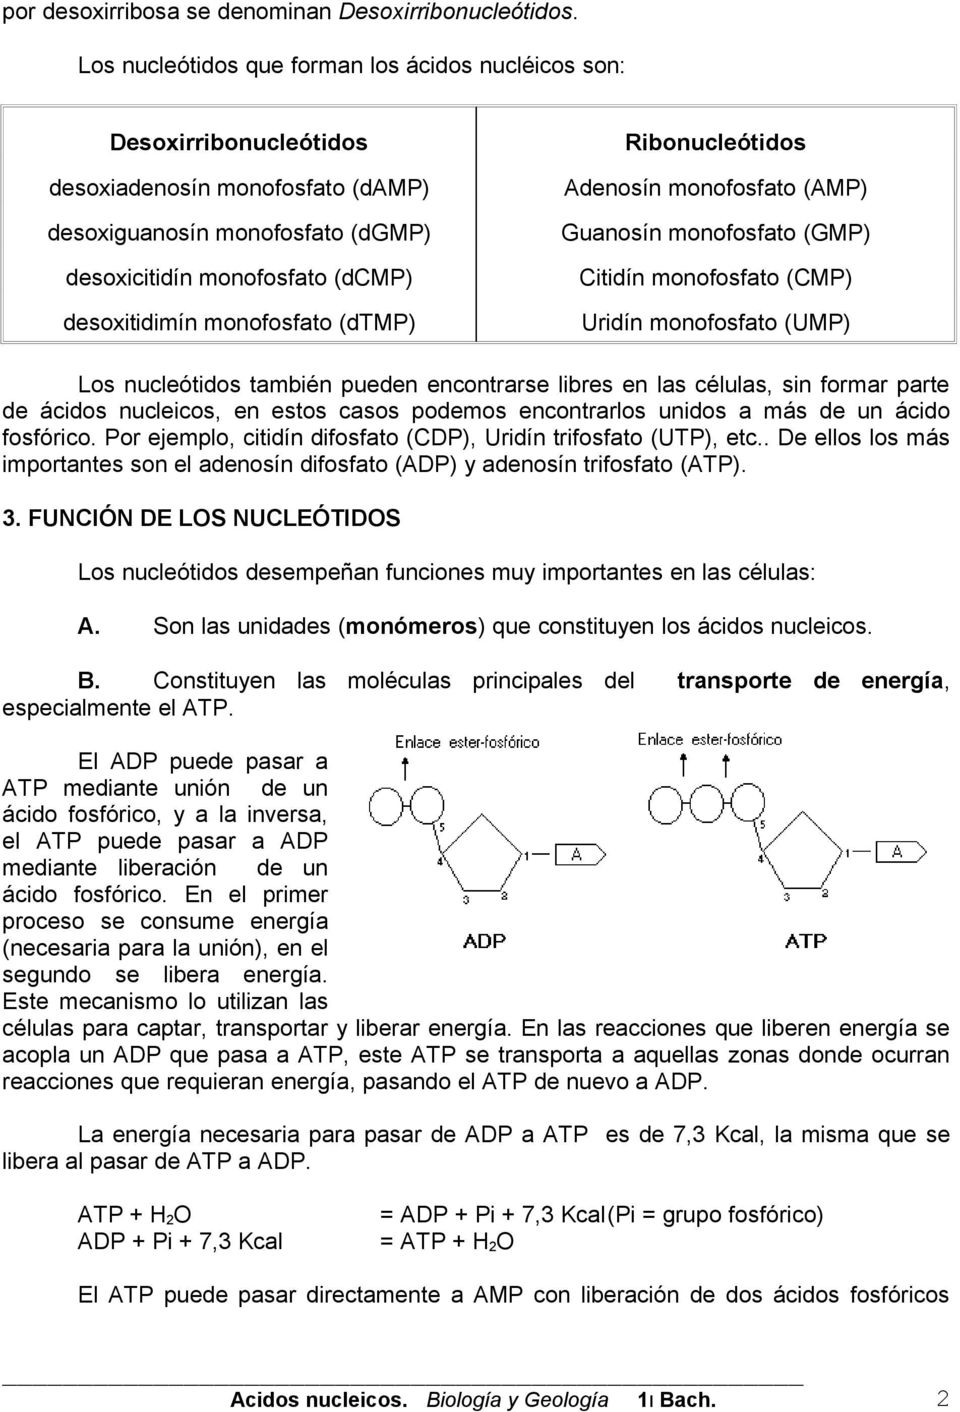 monofosfato (dtmp) Ribonucleótidos Adenosín monofosfato (AMP) Guanosín monofosfato (GMP) Citidín monofosfato (CMP) Uridín monofosfato (UMP) Los nucleótidos también pueden encontrarse libres en las